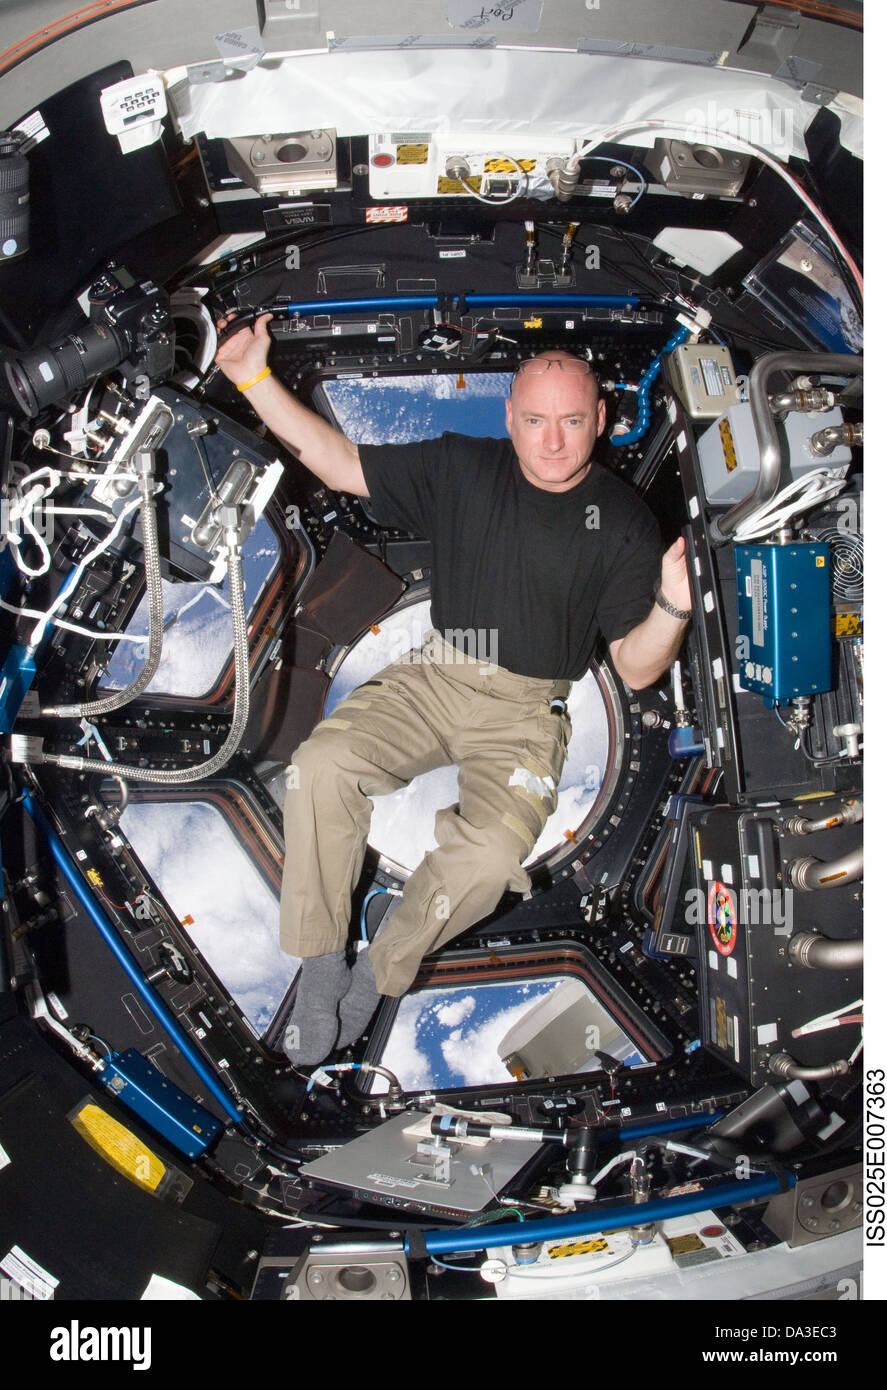 Spazio NASA Stazione Spaziale Internazionale astronauta comandante Scott Kelly, Expedition 25 tecnico di volo della Cupola Foto Stock